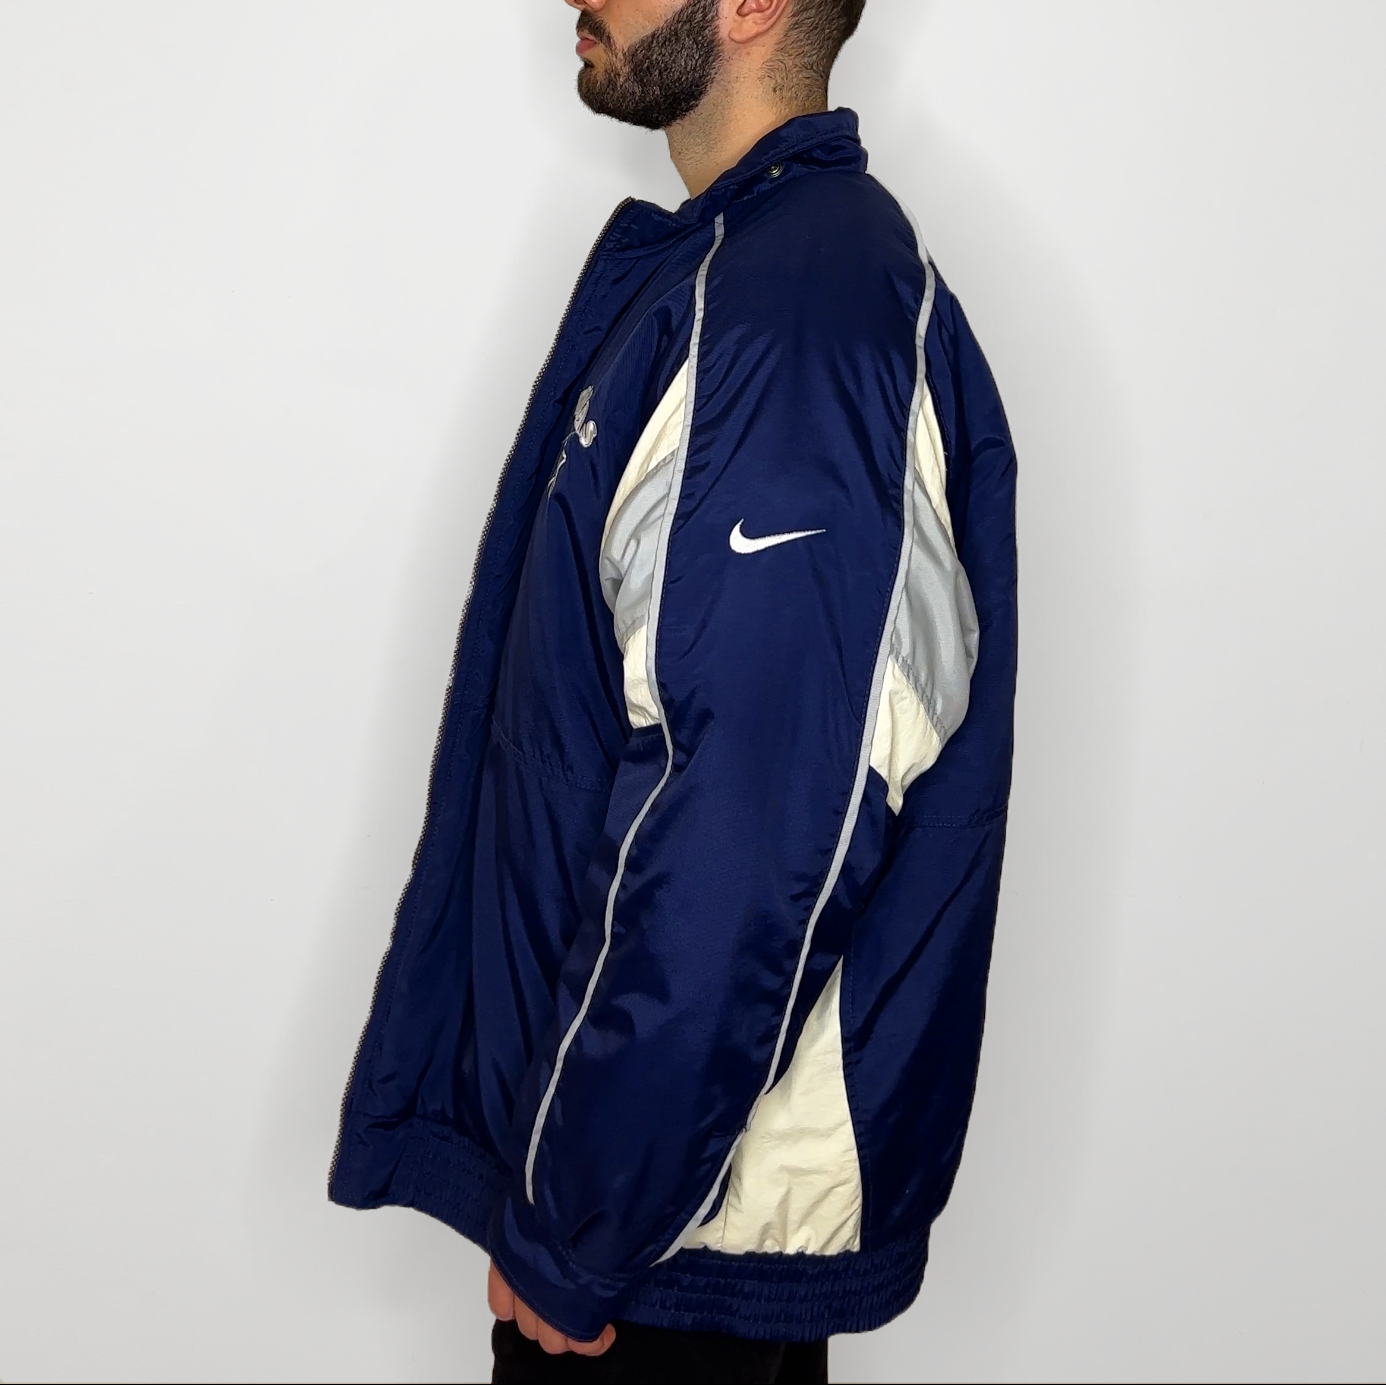 Vintage Nike Dallas Cowboys Jacket